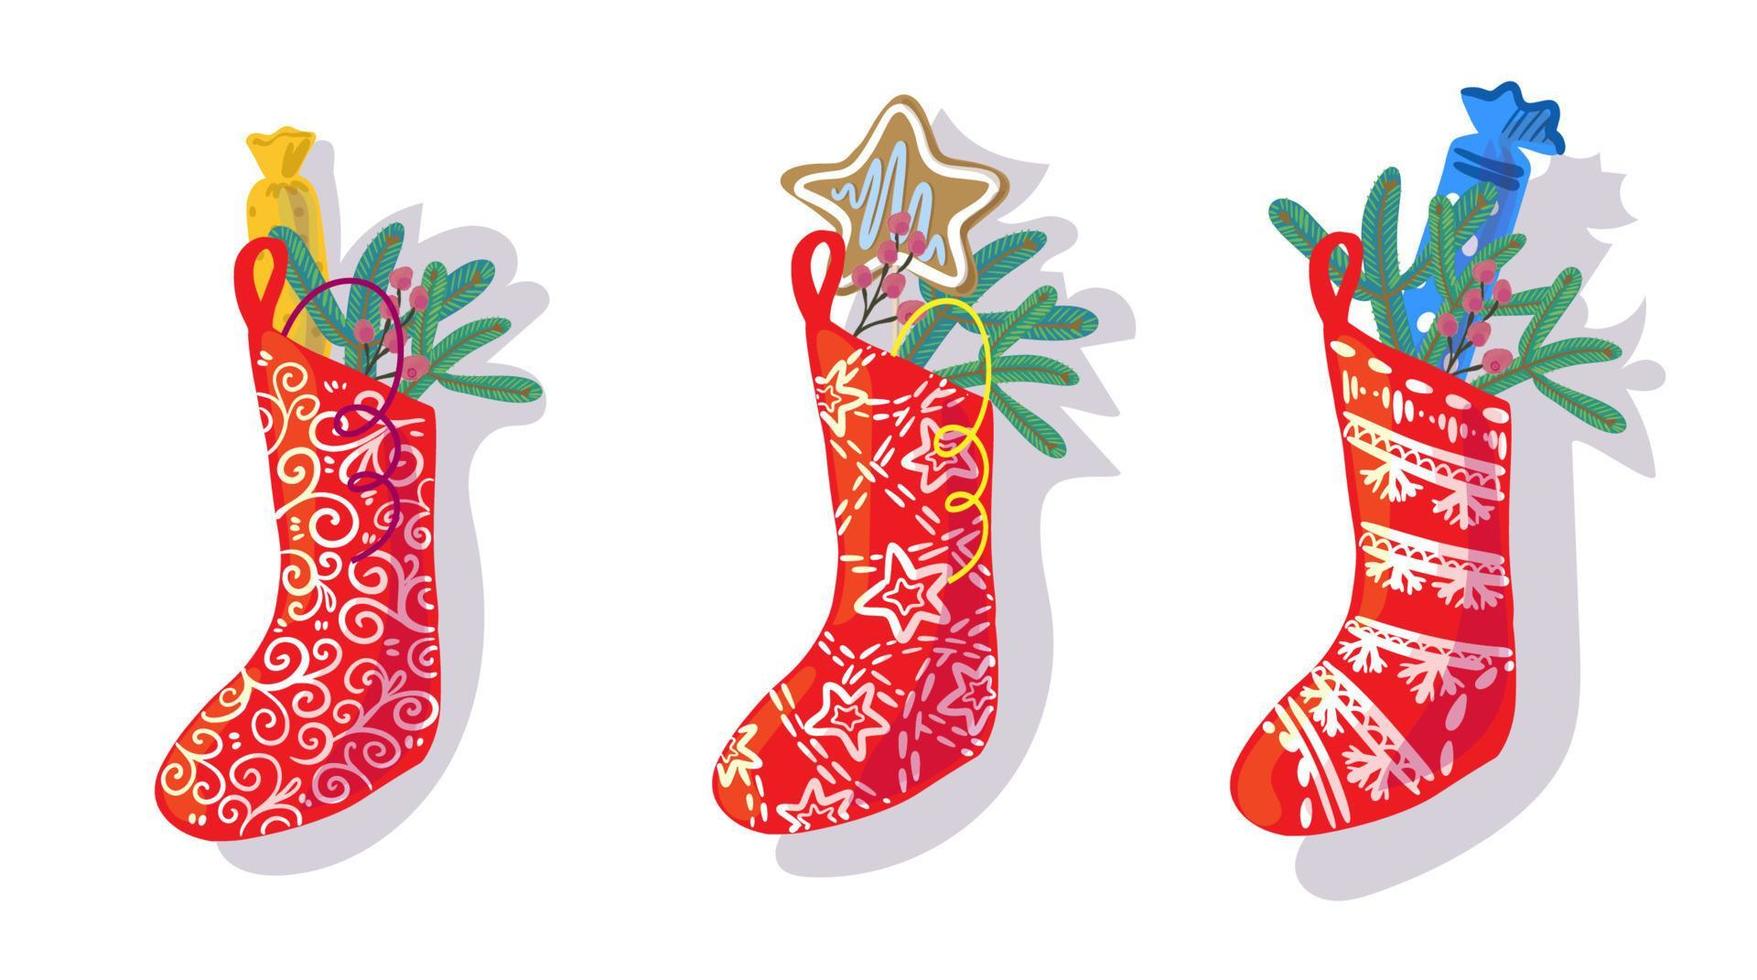 Weihnachtssocke mit Süßigkeiten, Geschenken und Geschenken Symbol mit Schatten. flaches Design der Vektorillustration vektor